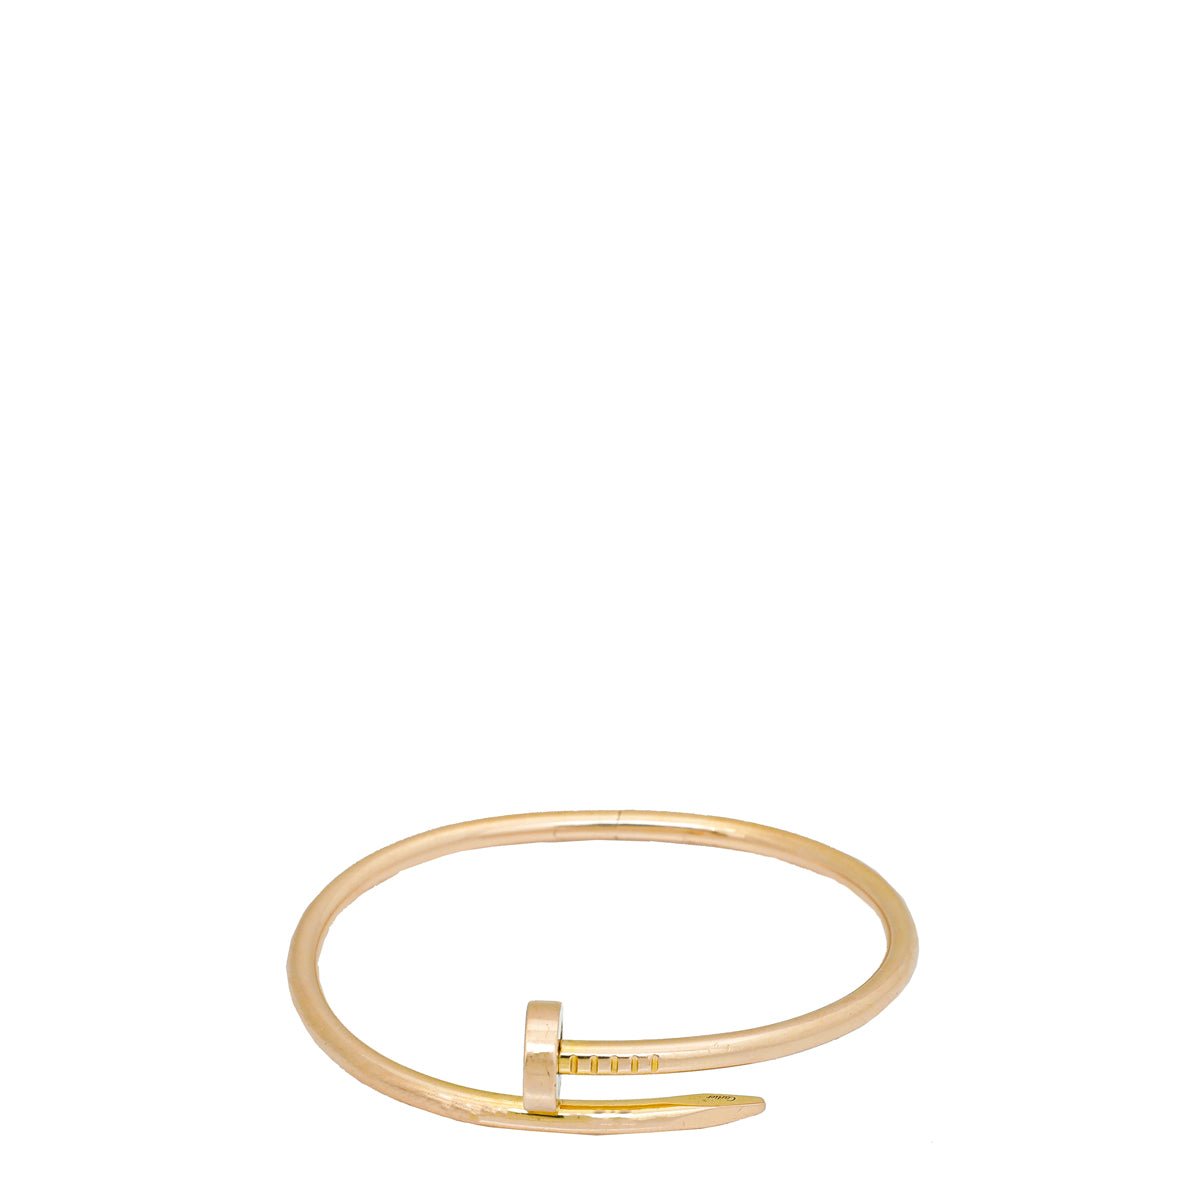 Cartier Juste Un Clou Bracelet Rose Gold with Diamonds Size 16 B6039017 |  Cartier | Buy at TrueFacet